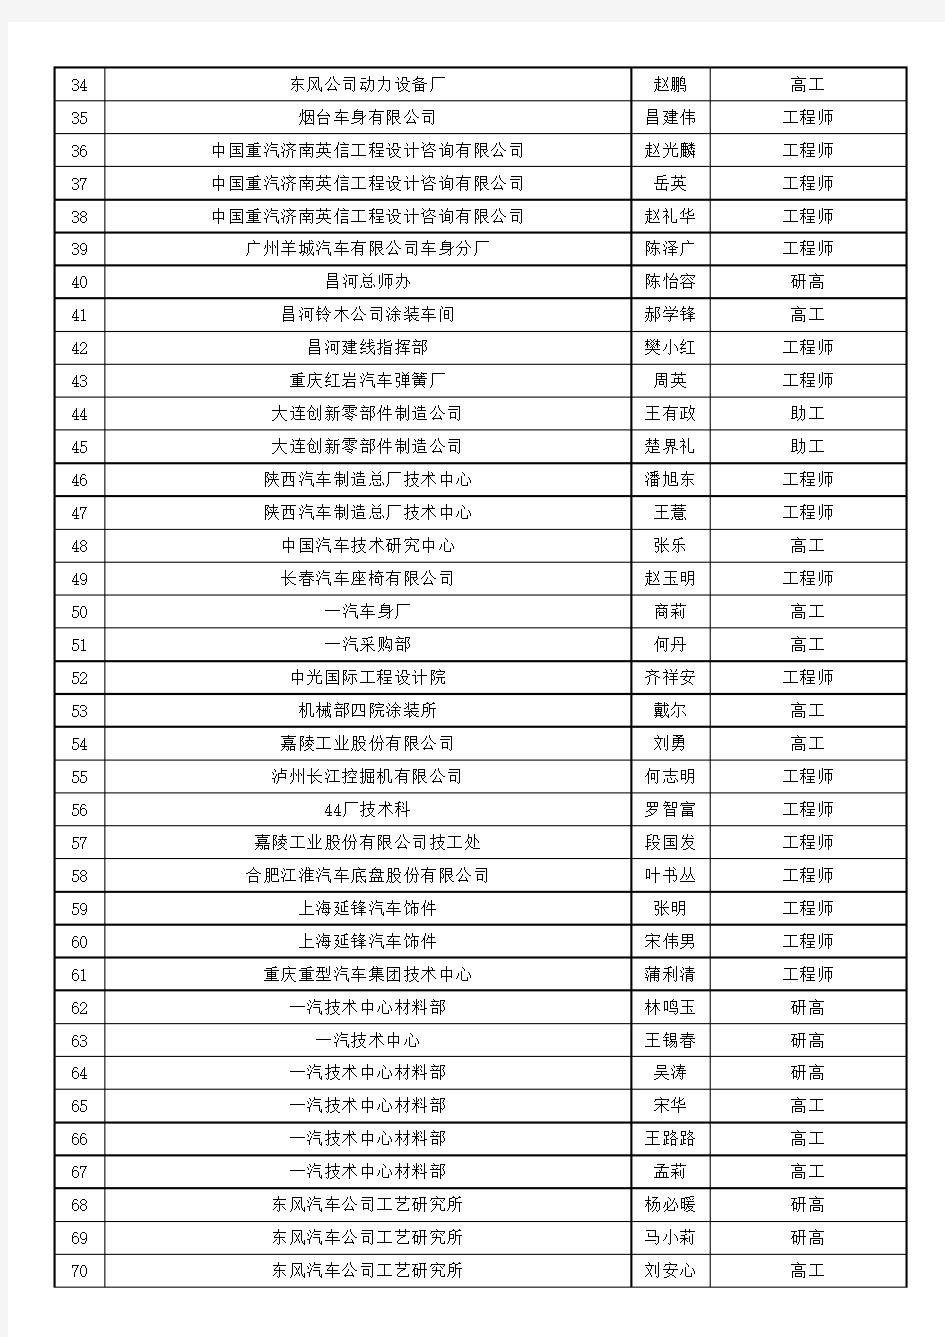 中国汽车整车及零部件企业名录